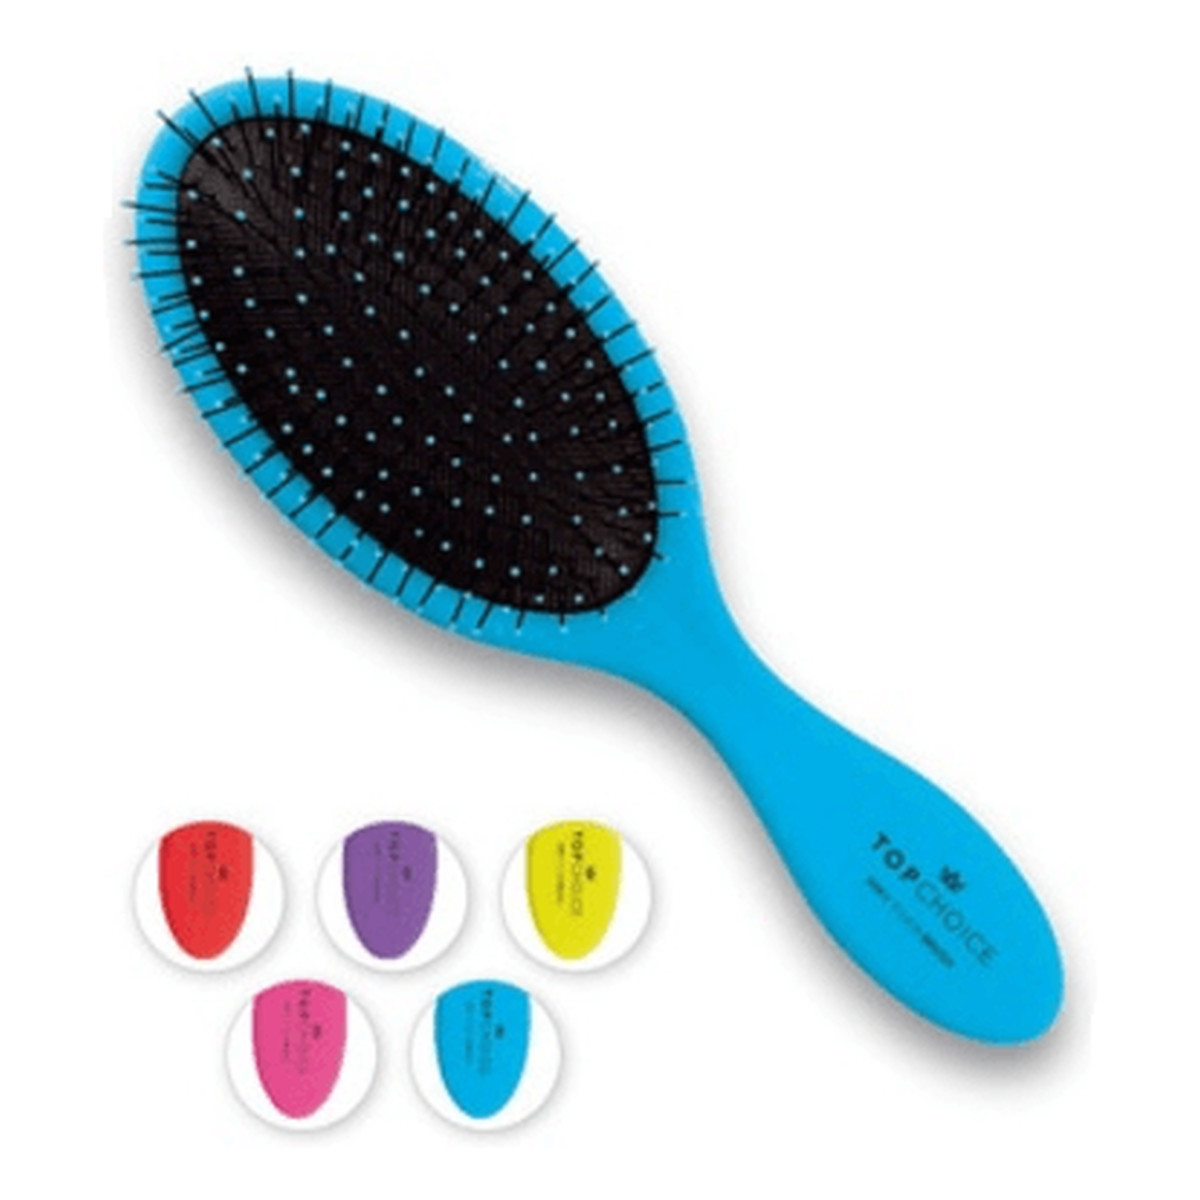 Top Choice Soft Touch Colour Szczotka do włosów